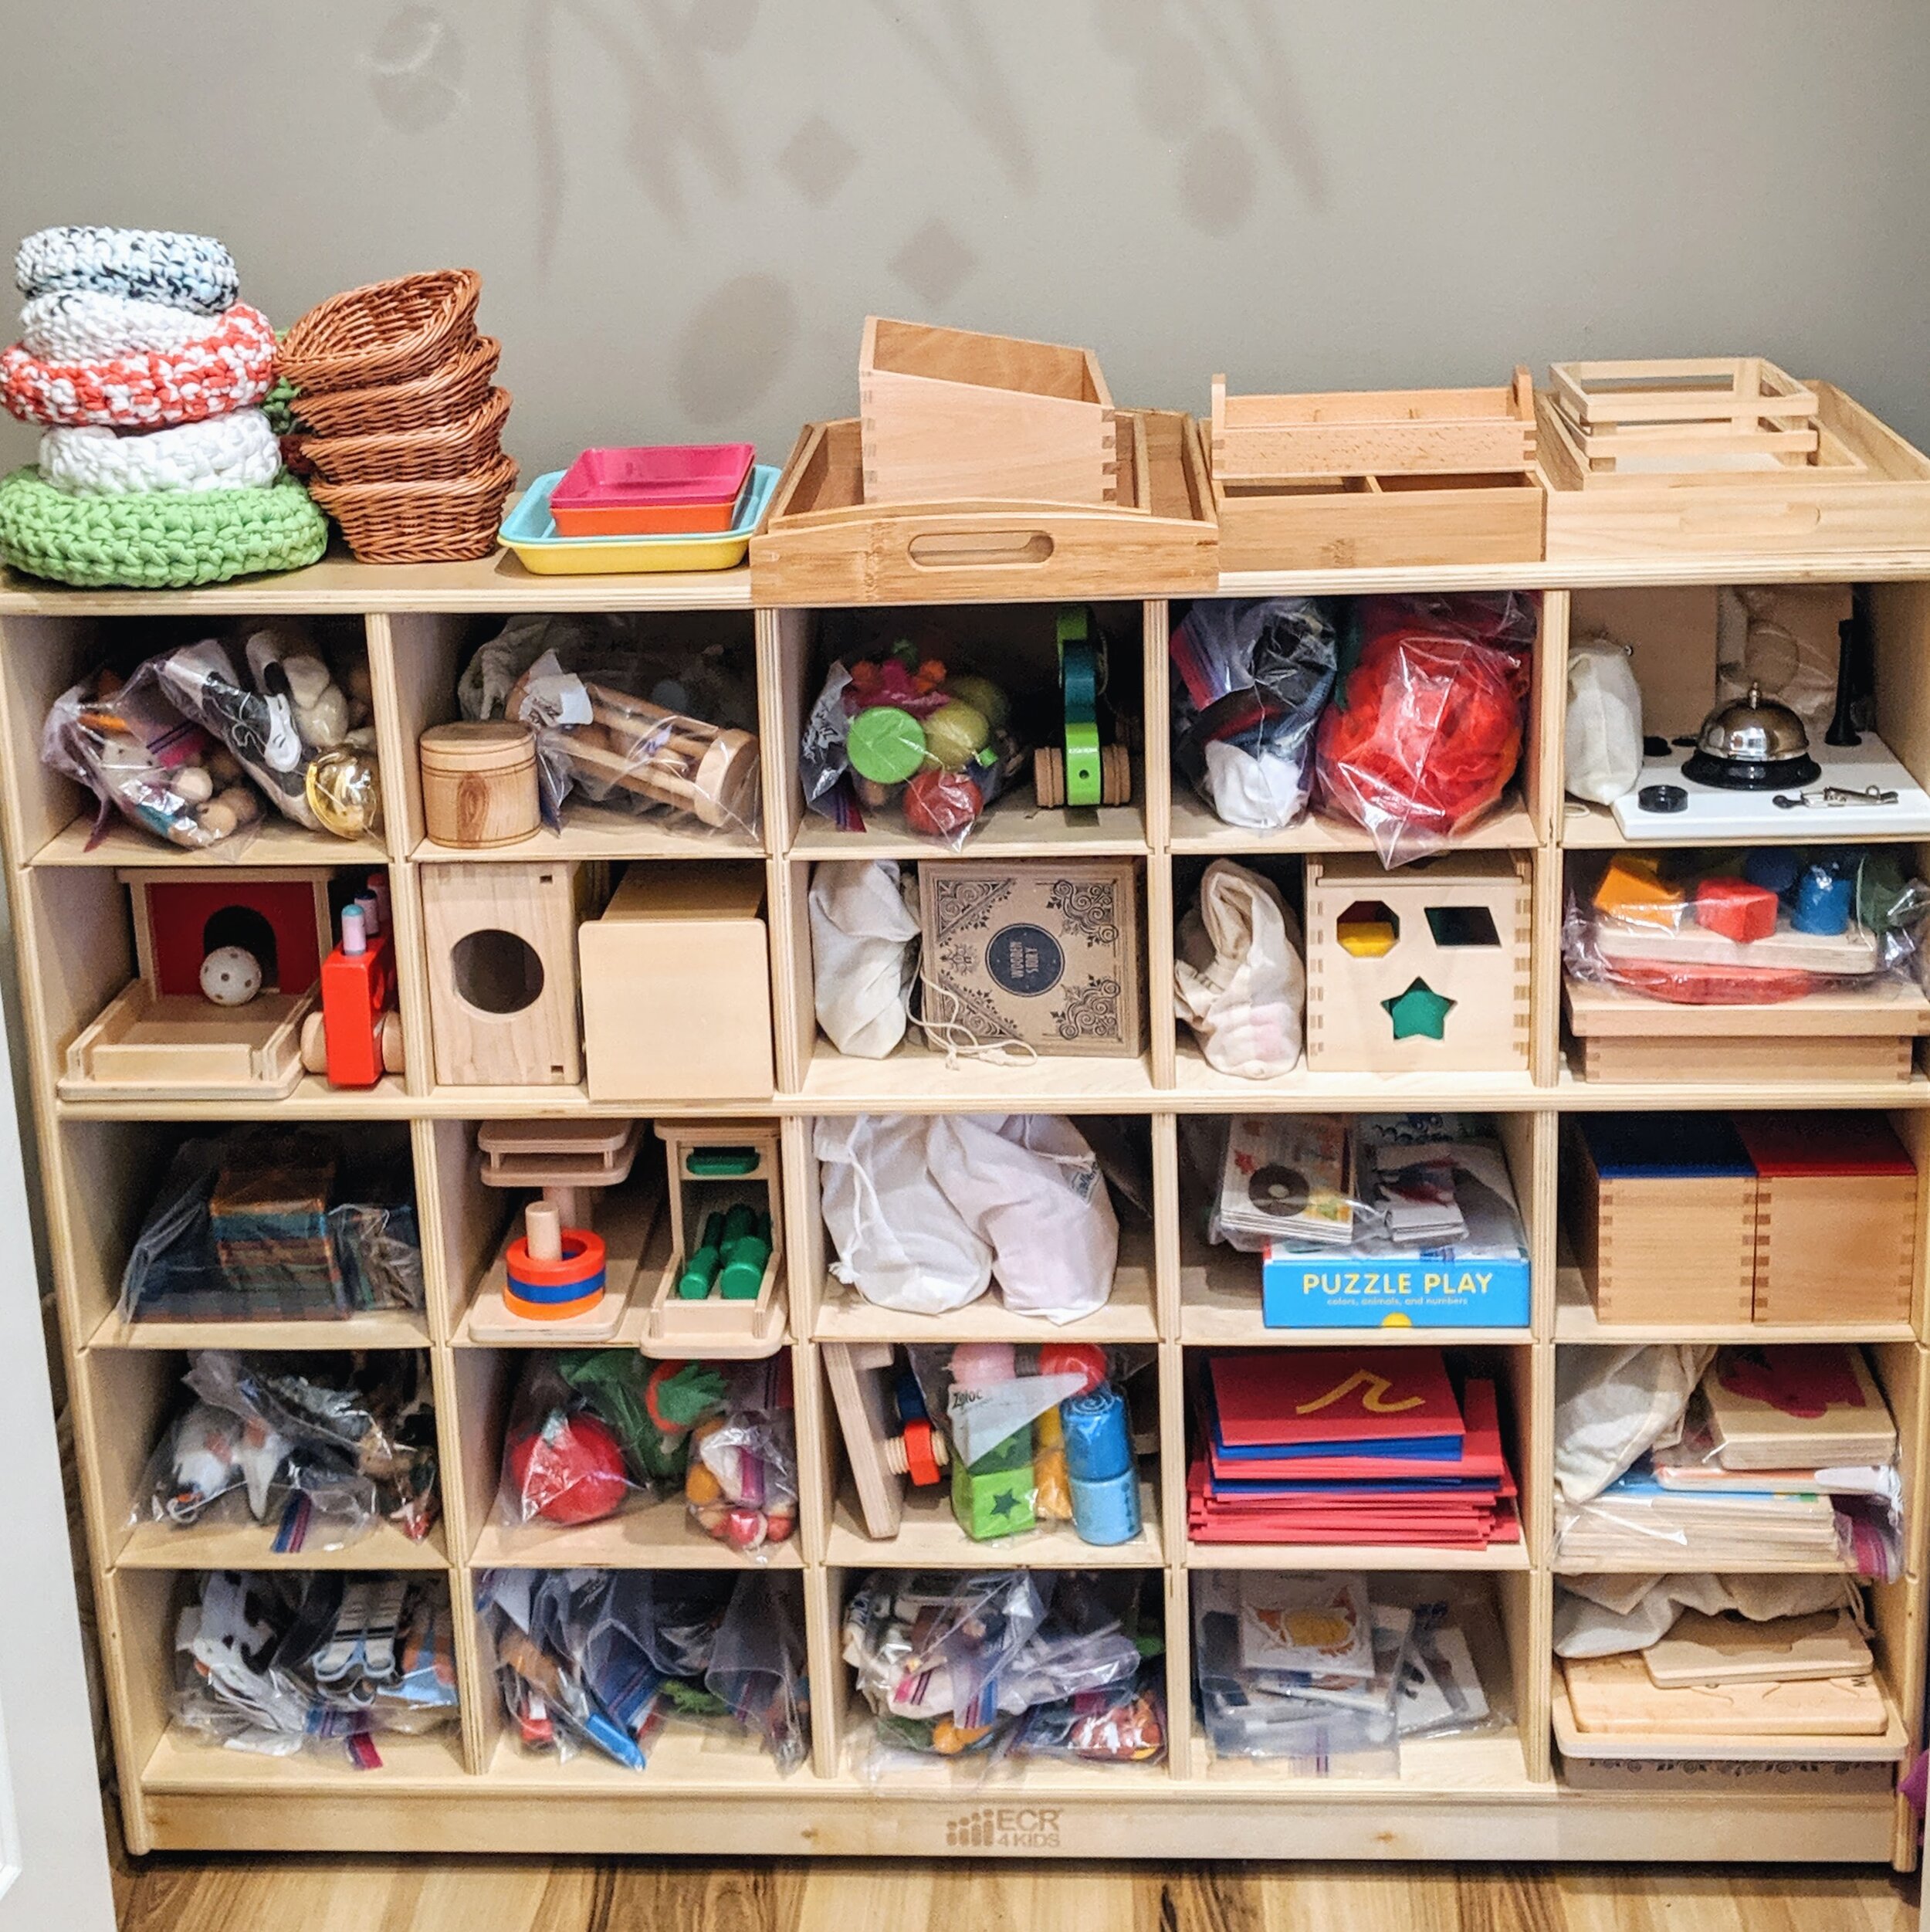 Our Montessori Home Tour — Montessori in Real Life